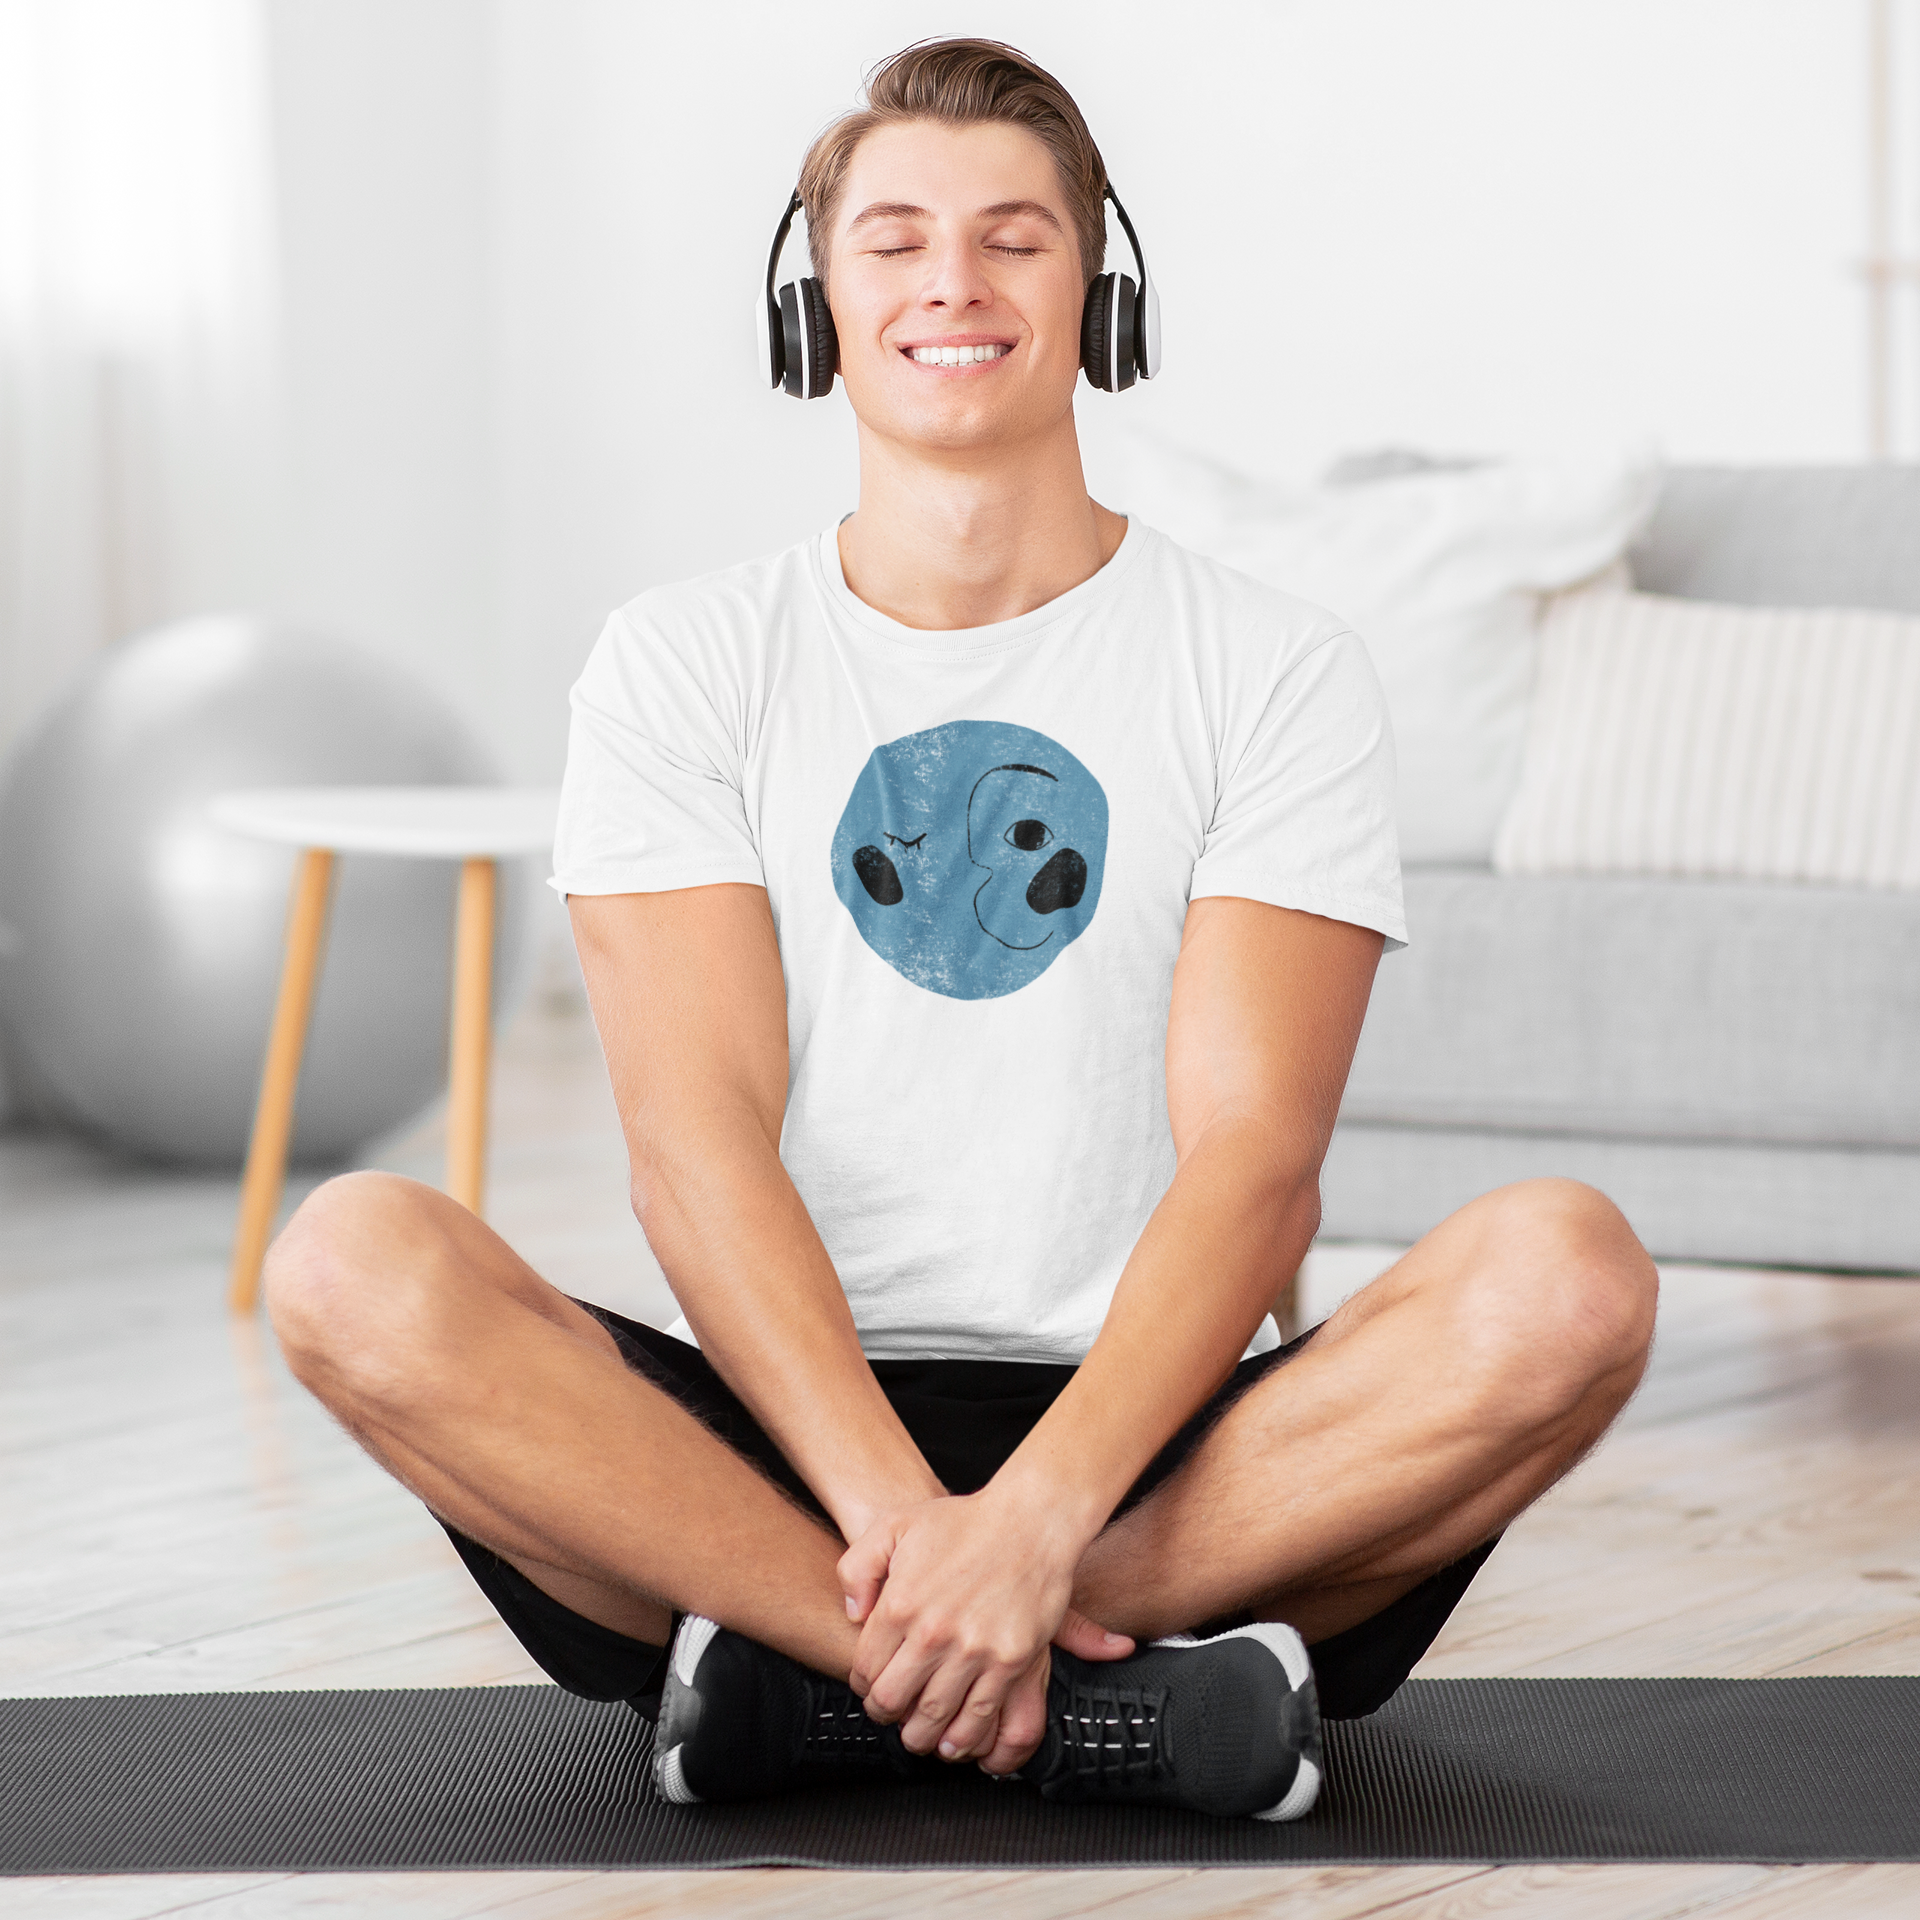 Meditation White Round Neck T-Shirt for Men. 